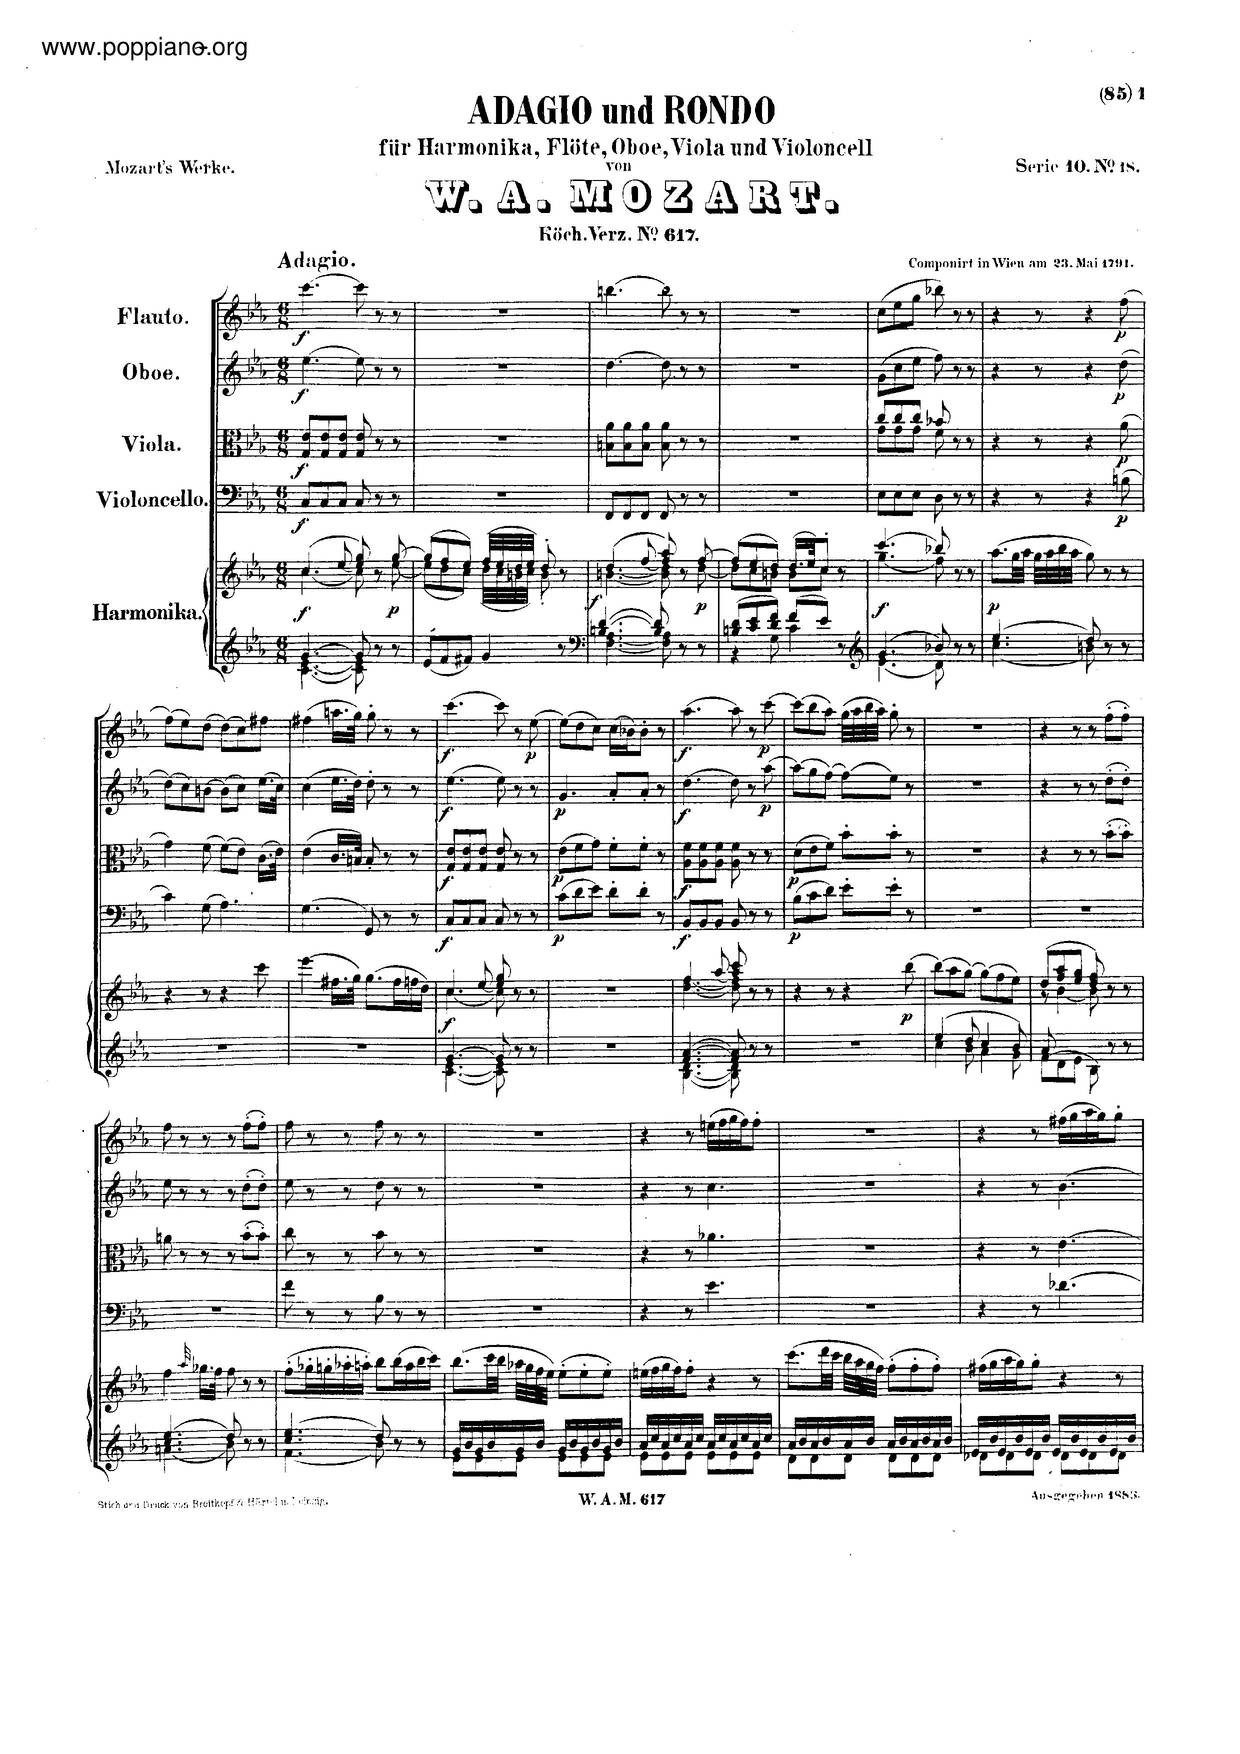 Adagio And Rondo In C Minor, K. 617 Score